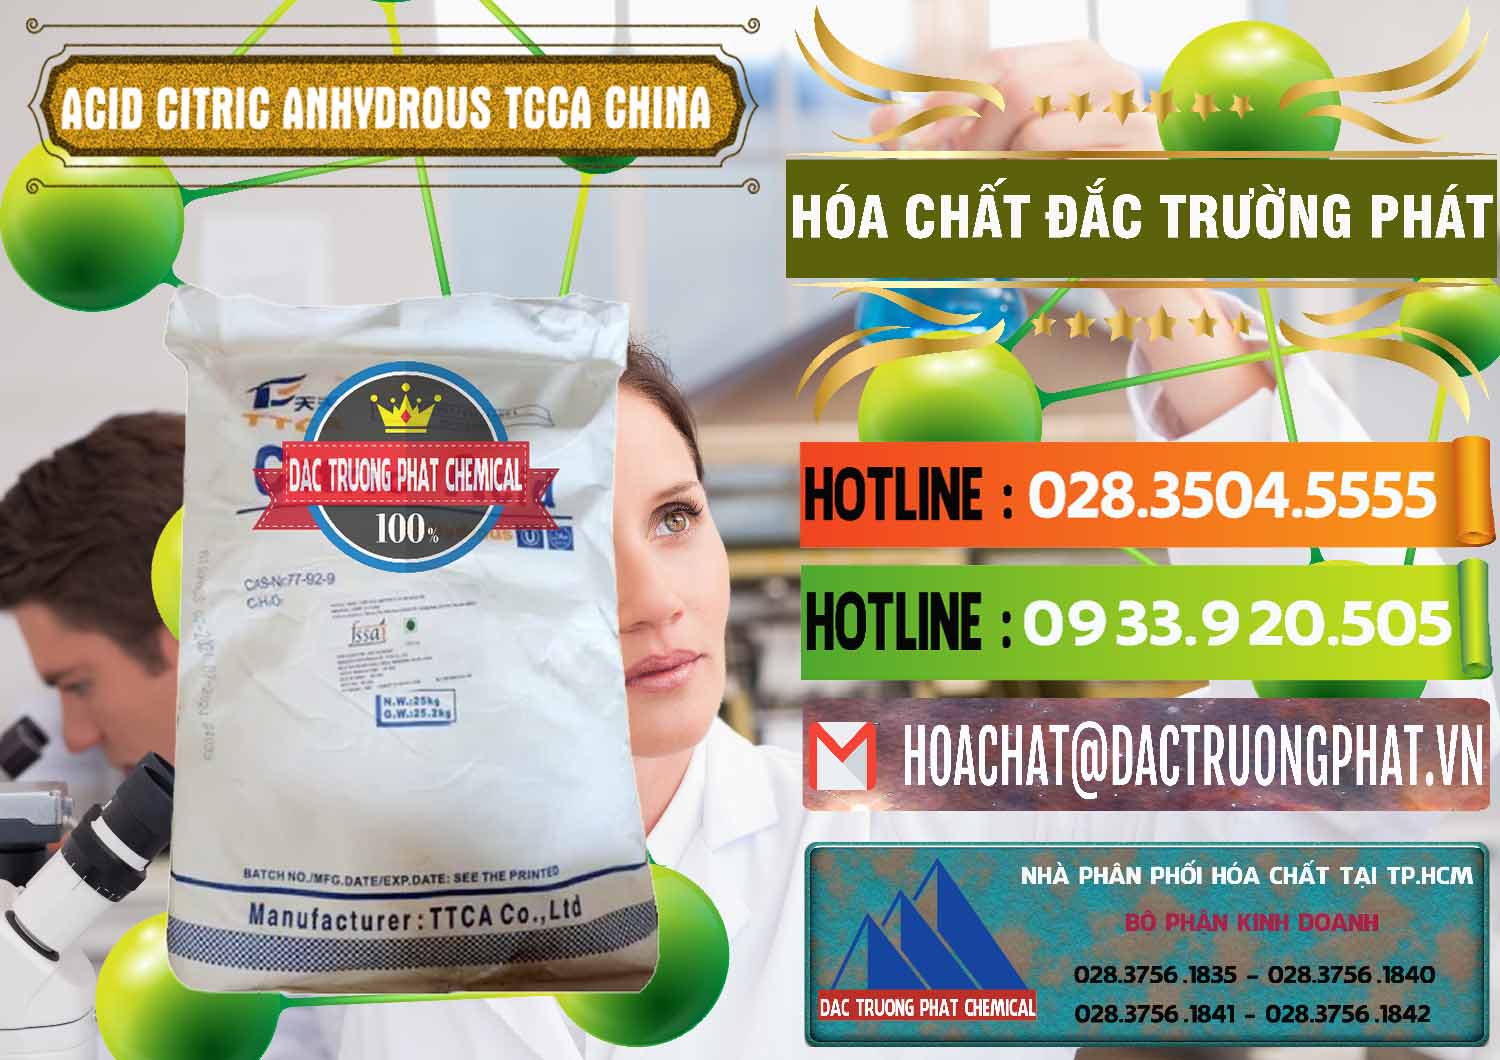 Nơi chuyên kinh doanh và bán Acid Citric - Axit Citric Anhydrous TCCA Trung Quốc China - 0442 - Đơn vị chuyên kinh doanh - phân phối hóa chất tại TP.HCM - cungcaphoachat.com.vn